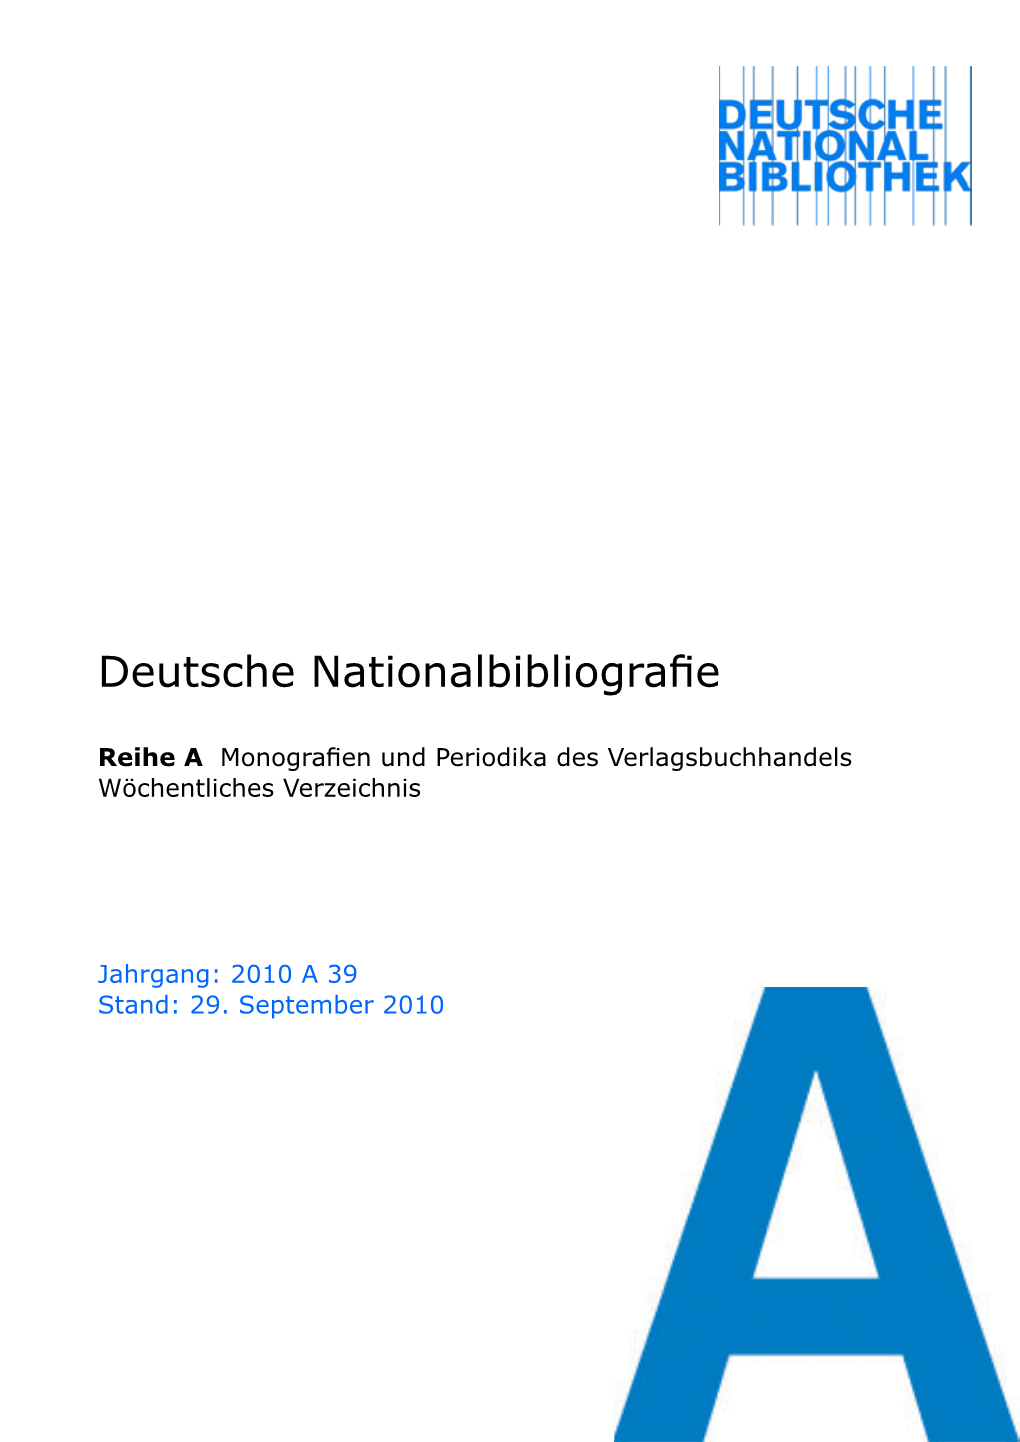 Deutsche Nationalbibliografie 2010 a 39